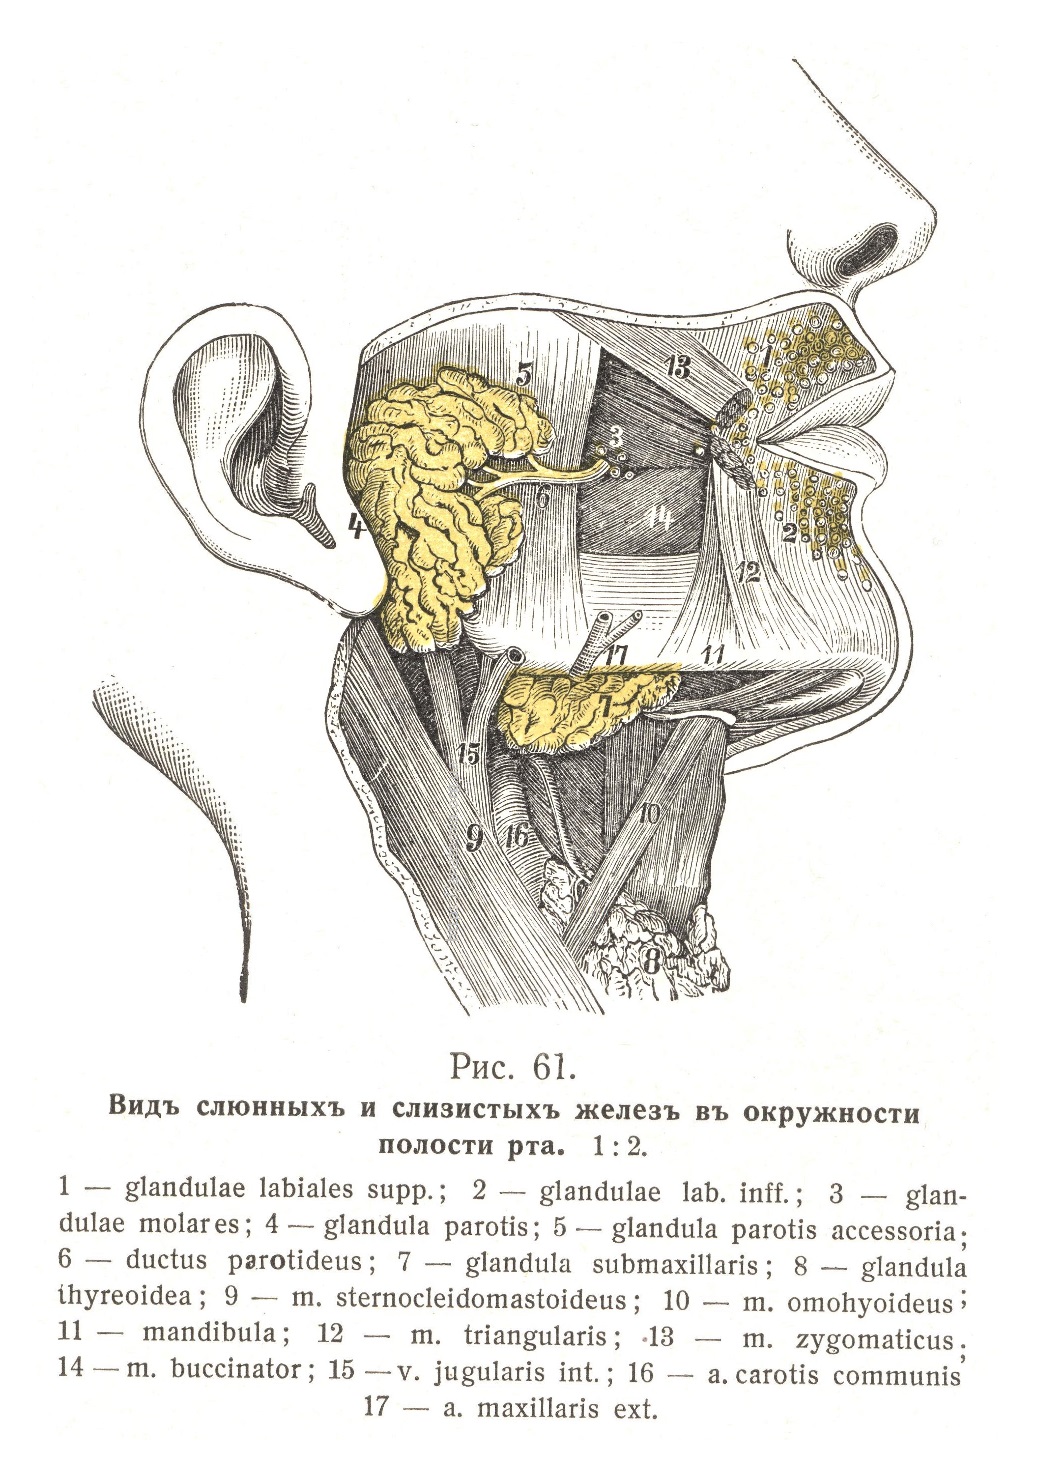 Слюнныя железы, glandulae oris